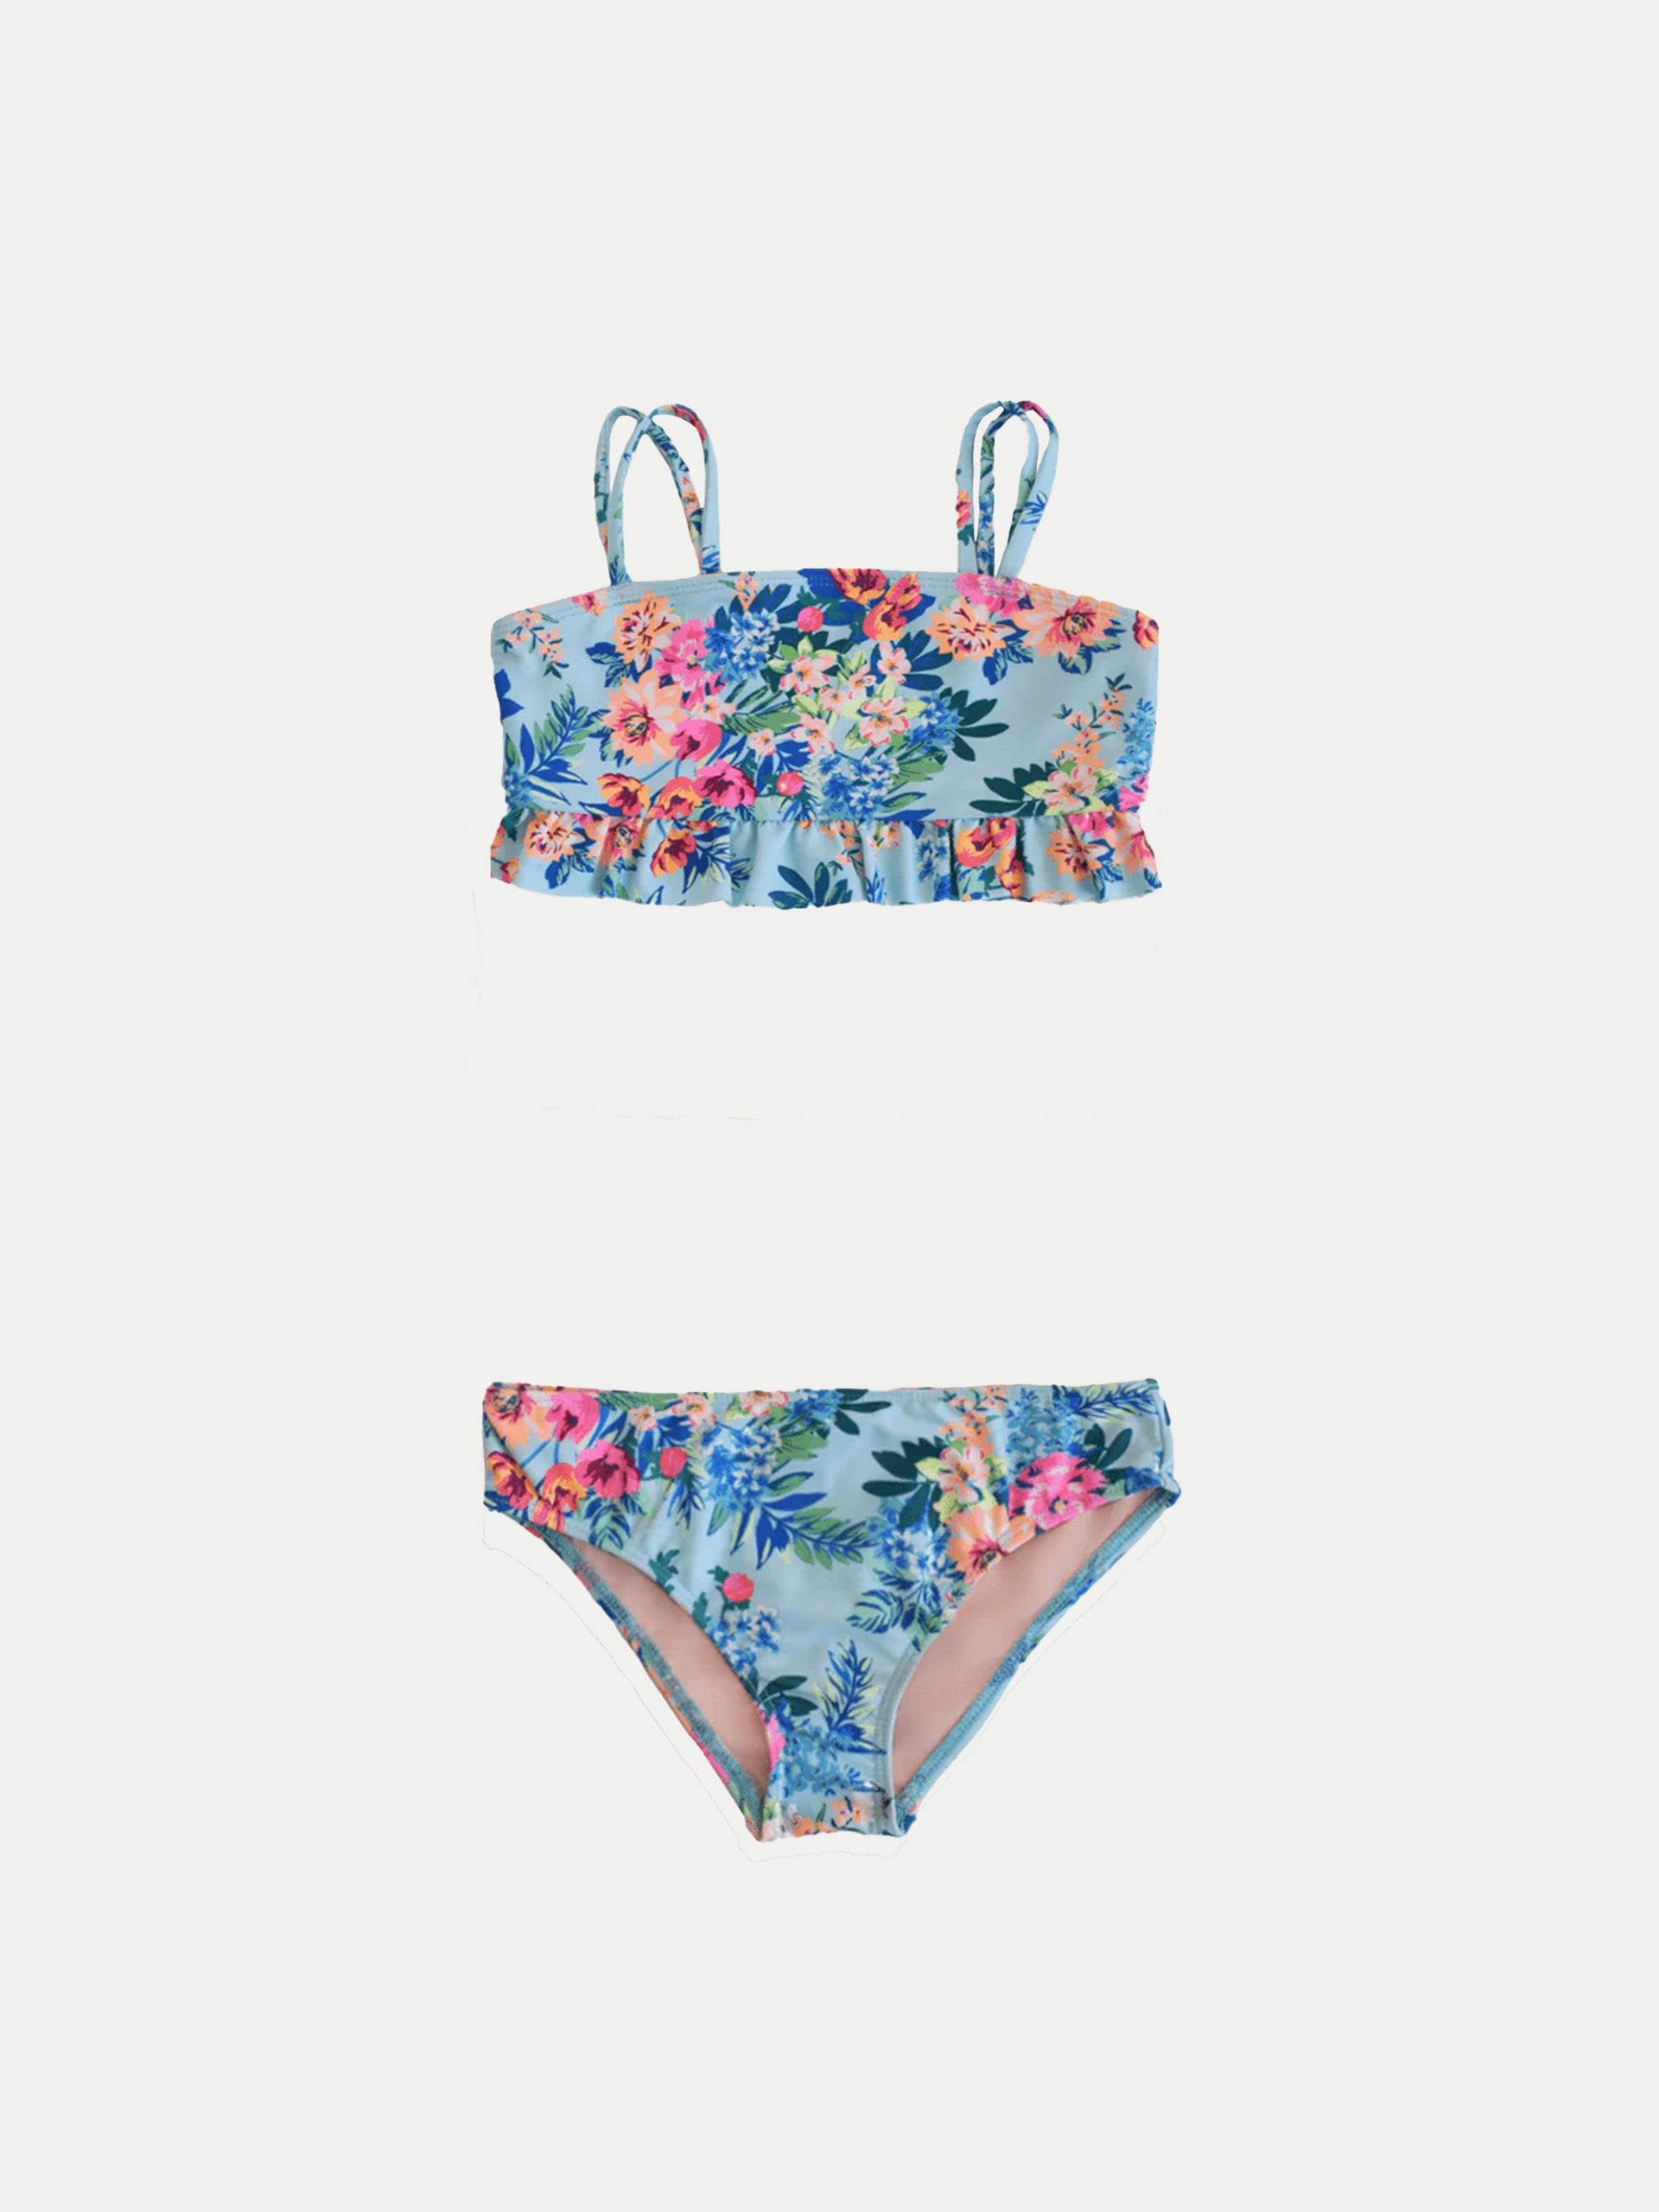 'Multi Flowers' Girls Swimwear by 98 Coast Av.